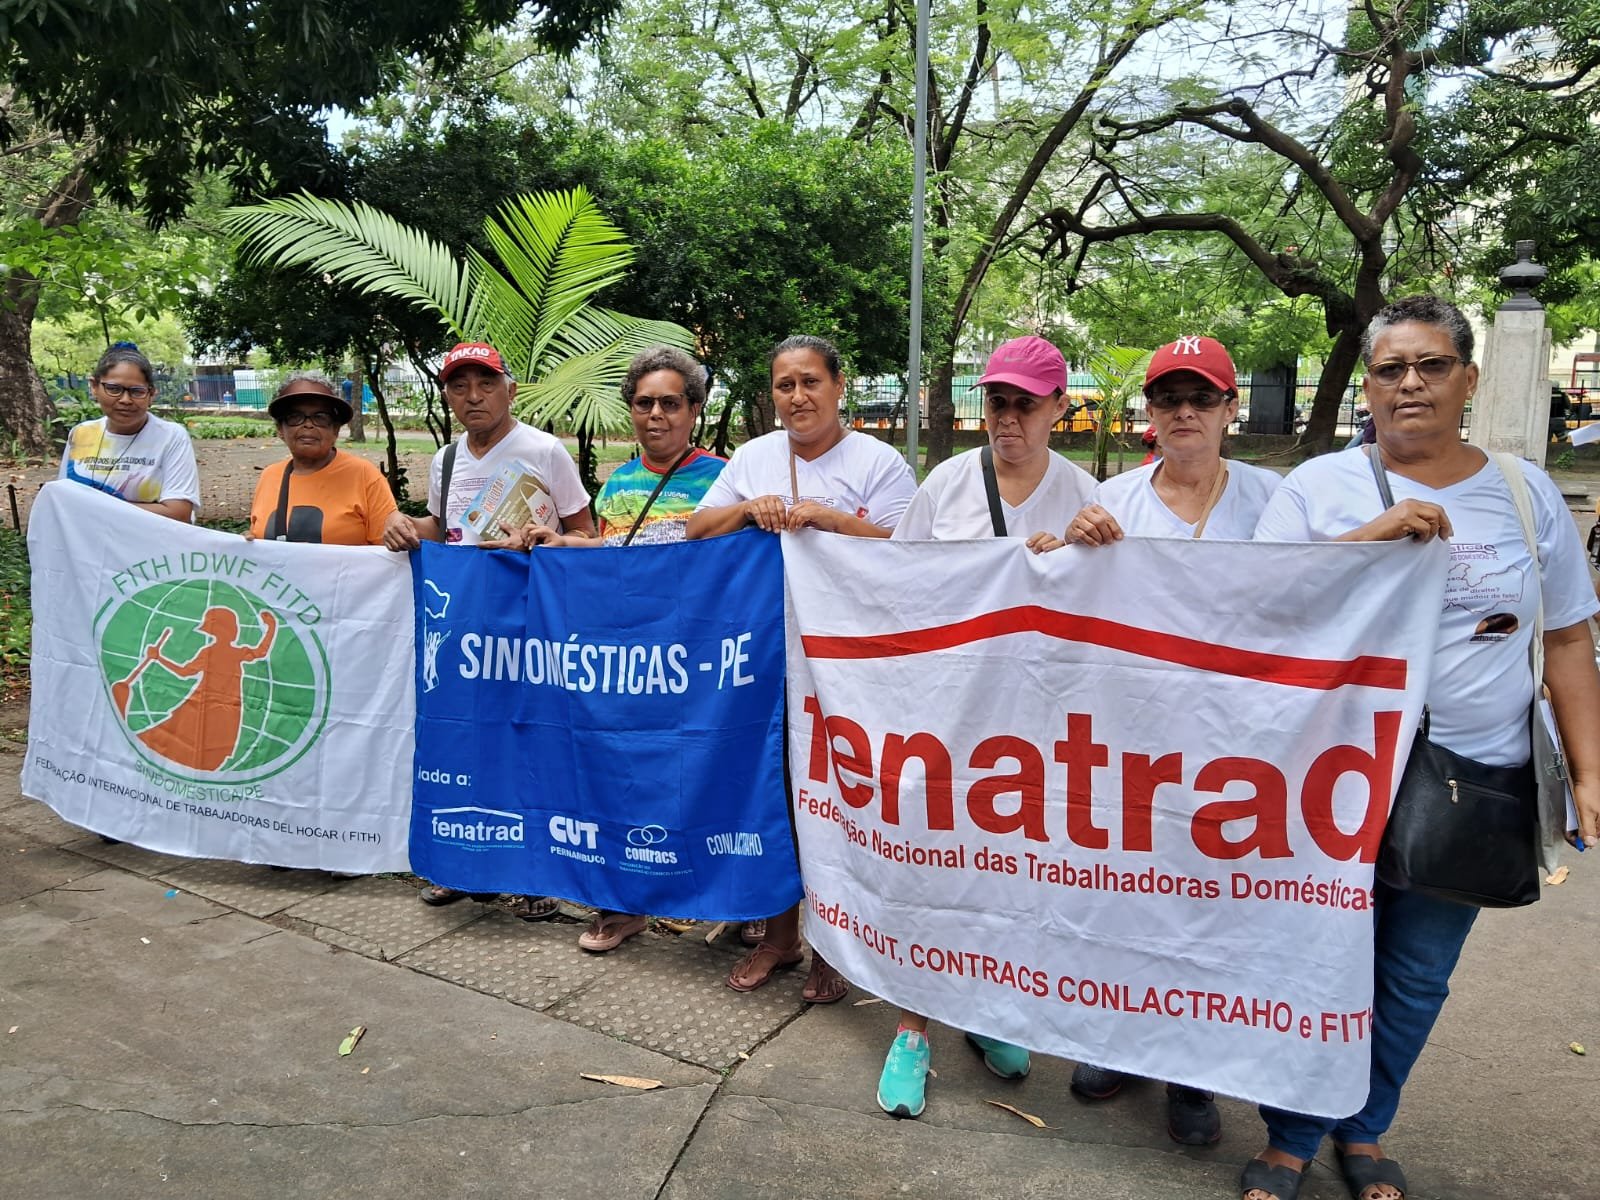 Sindicatos filiados à FENATRAD participam do Grito dos Excluídos